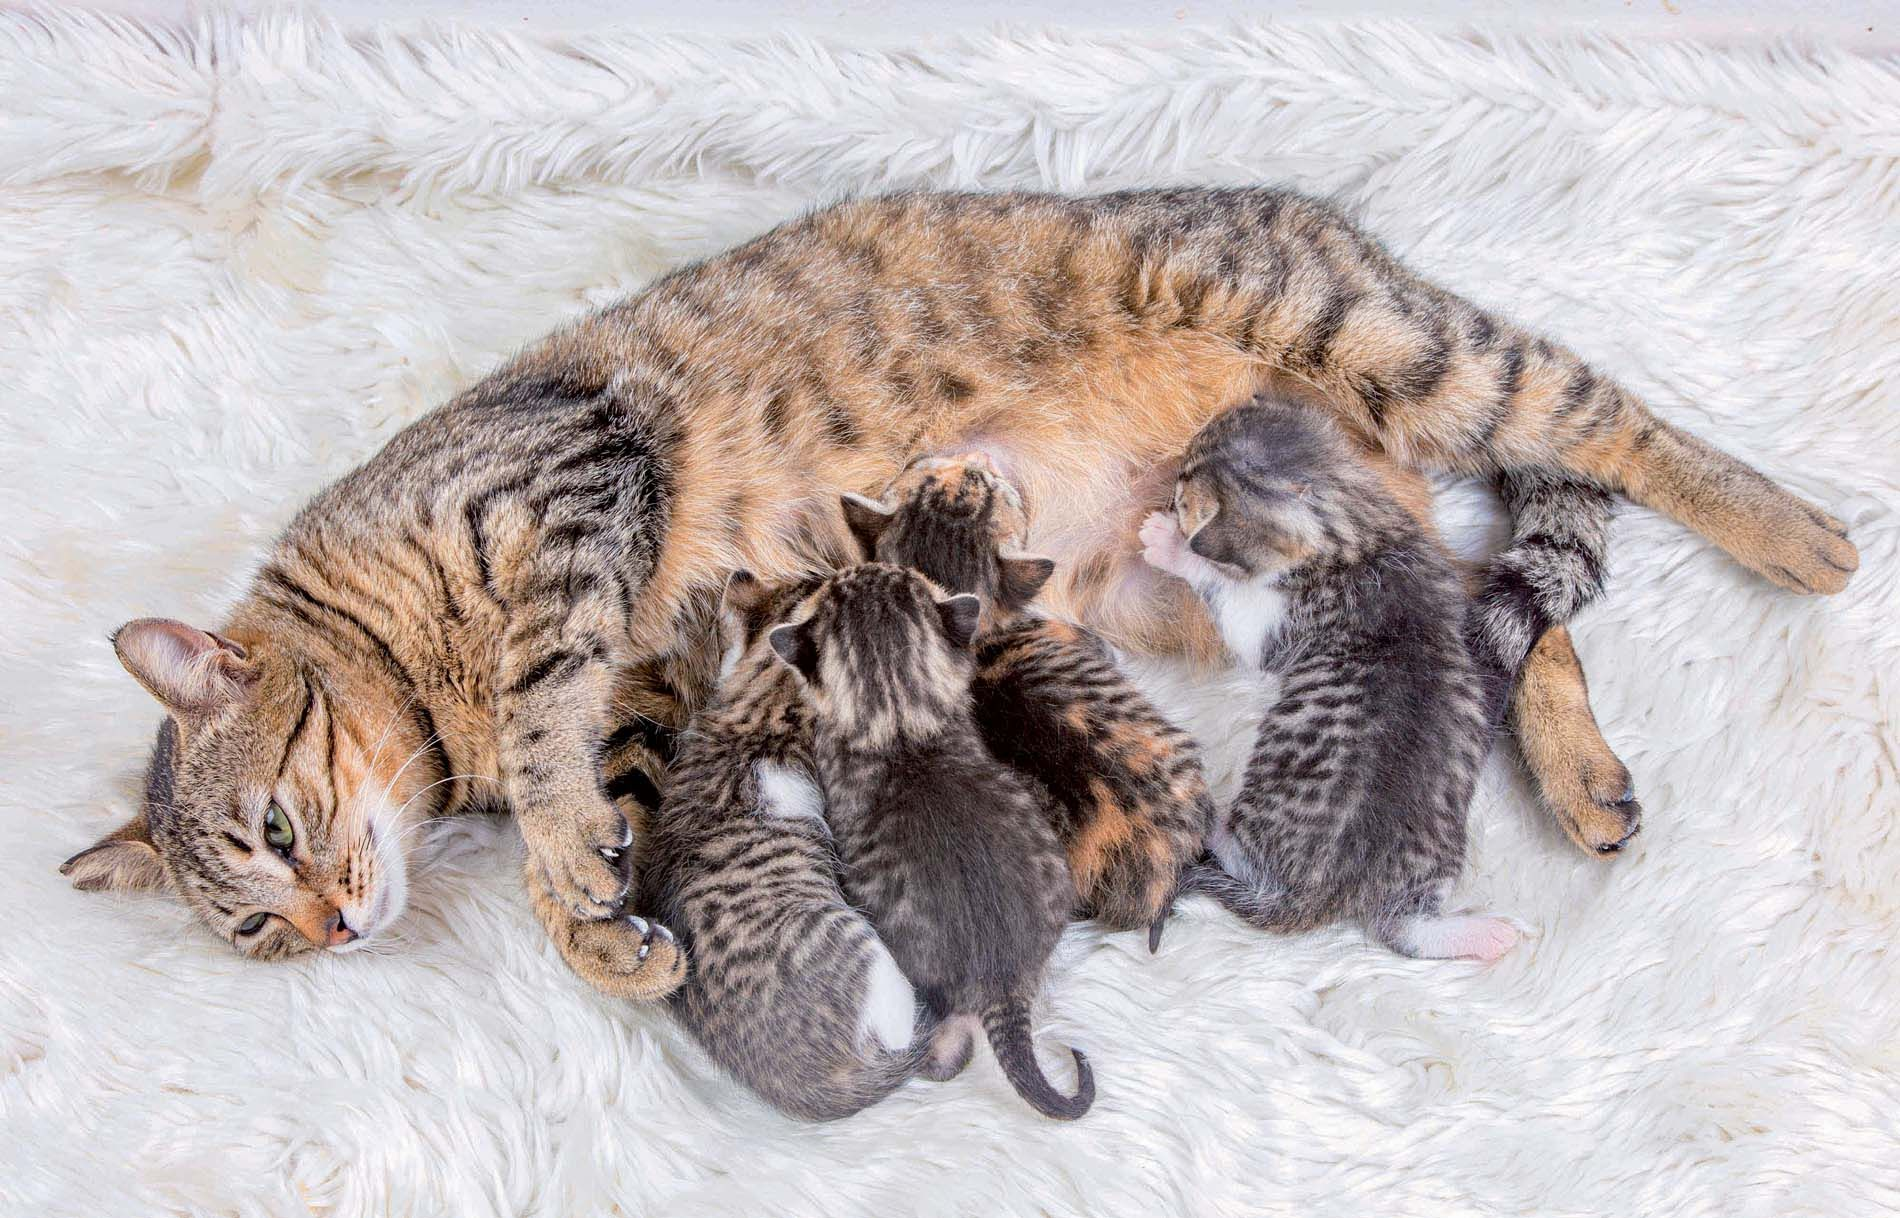 Los gatitos recién nacidos dependen totalmente de su madre para sobrevivir